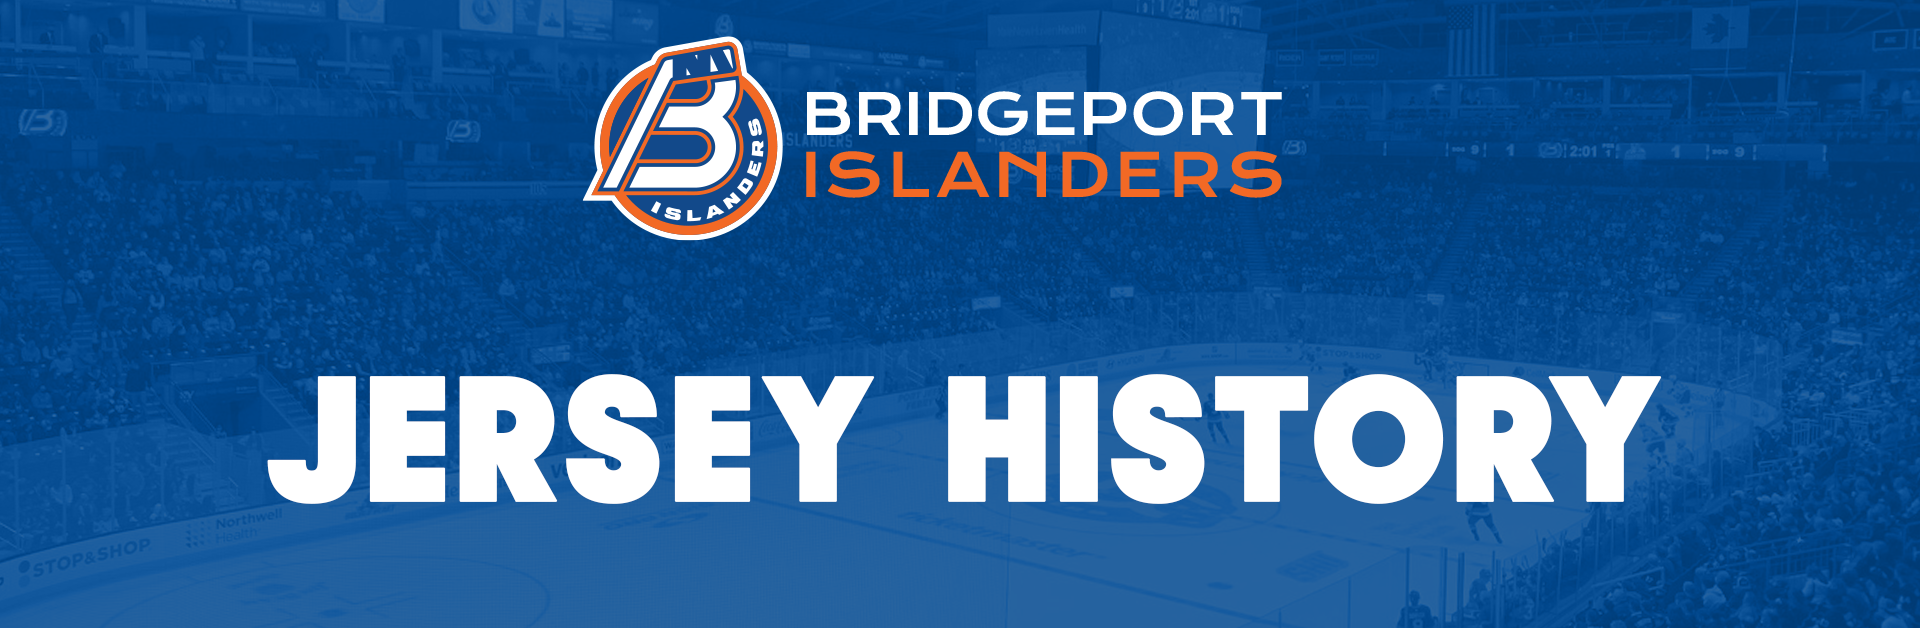 Jersey History  Bridgeport Islanders